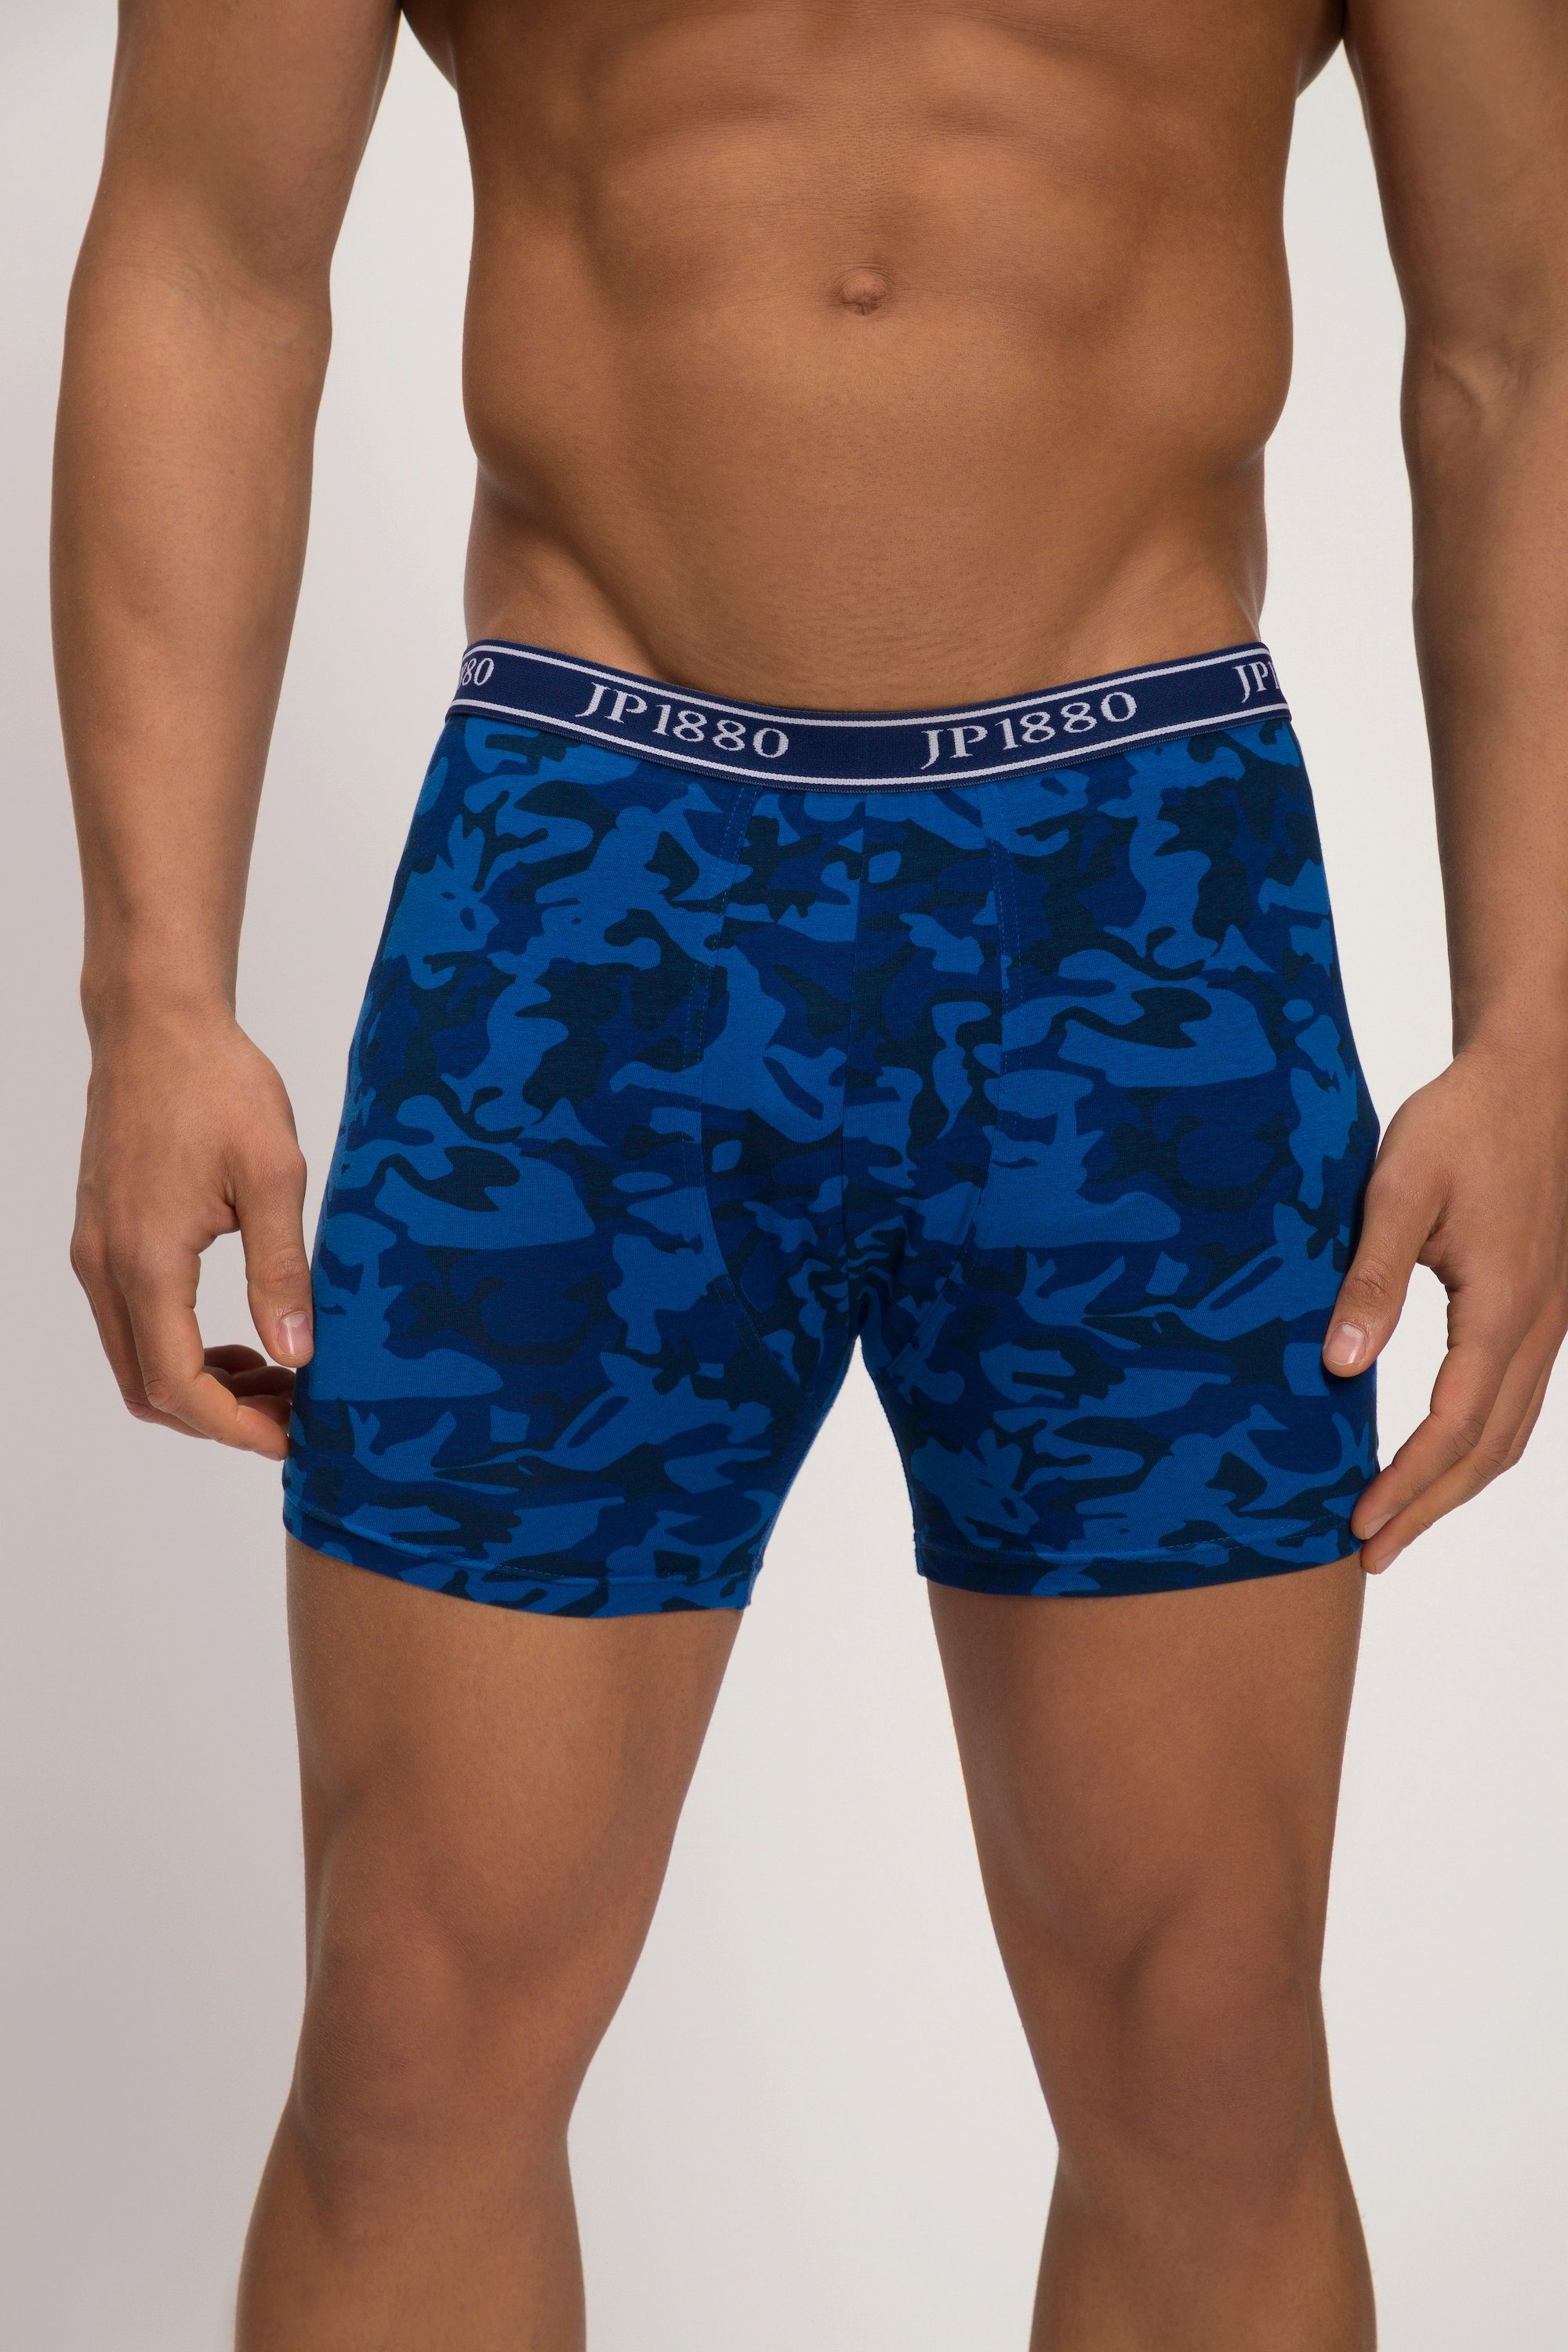 JP1880 Boxershorts Midpants FLEXNAMIC® Camouflage Unterhose indigo